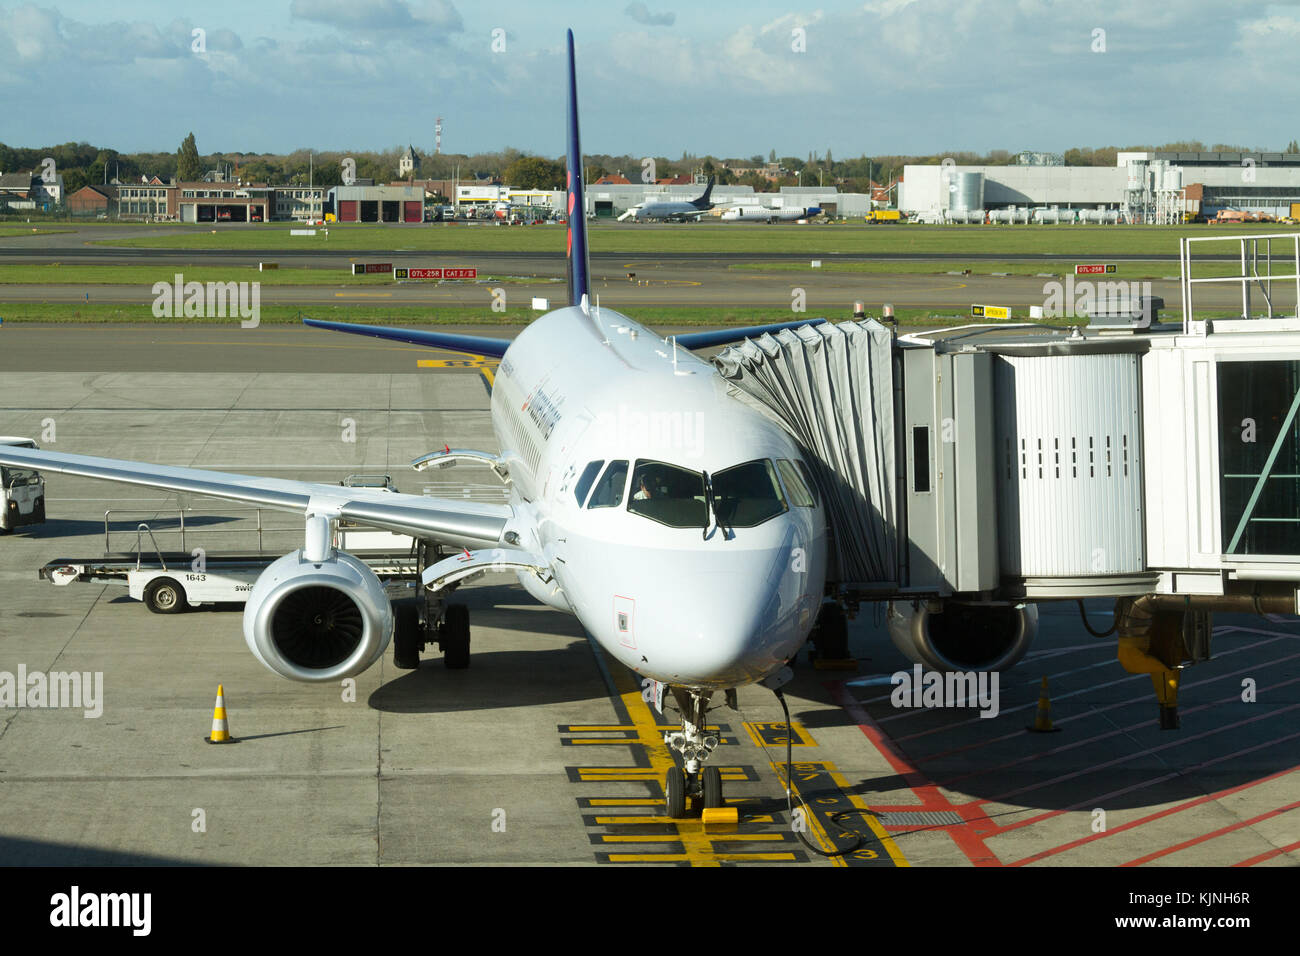 Ein Brussels Airlines Flugzeuge am Flughafen Zaventem Brussels balanciert. Stockfoto